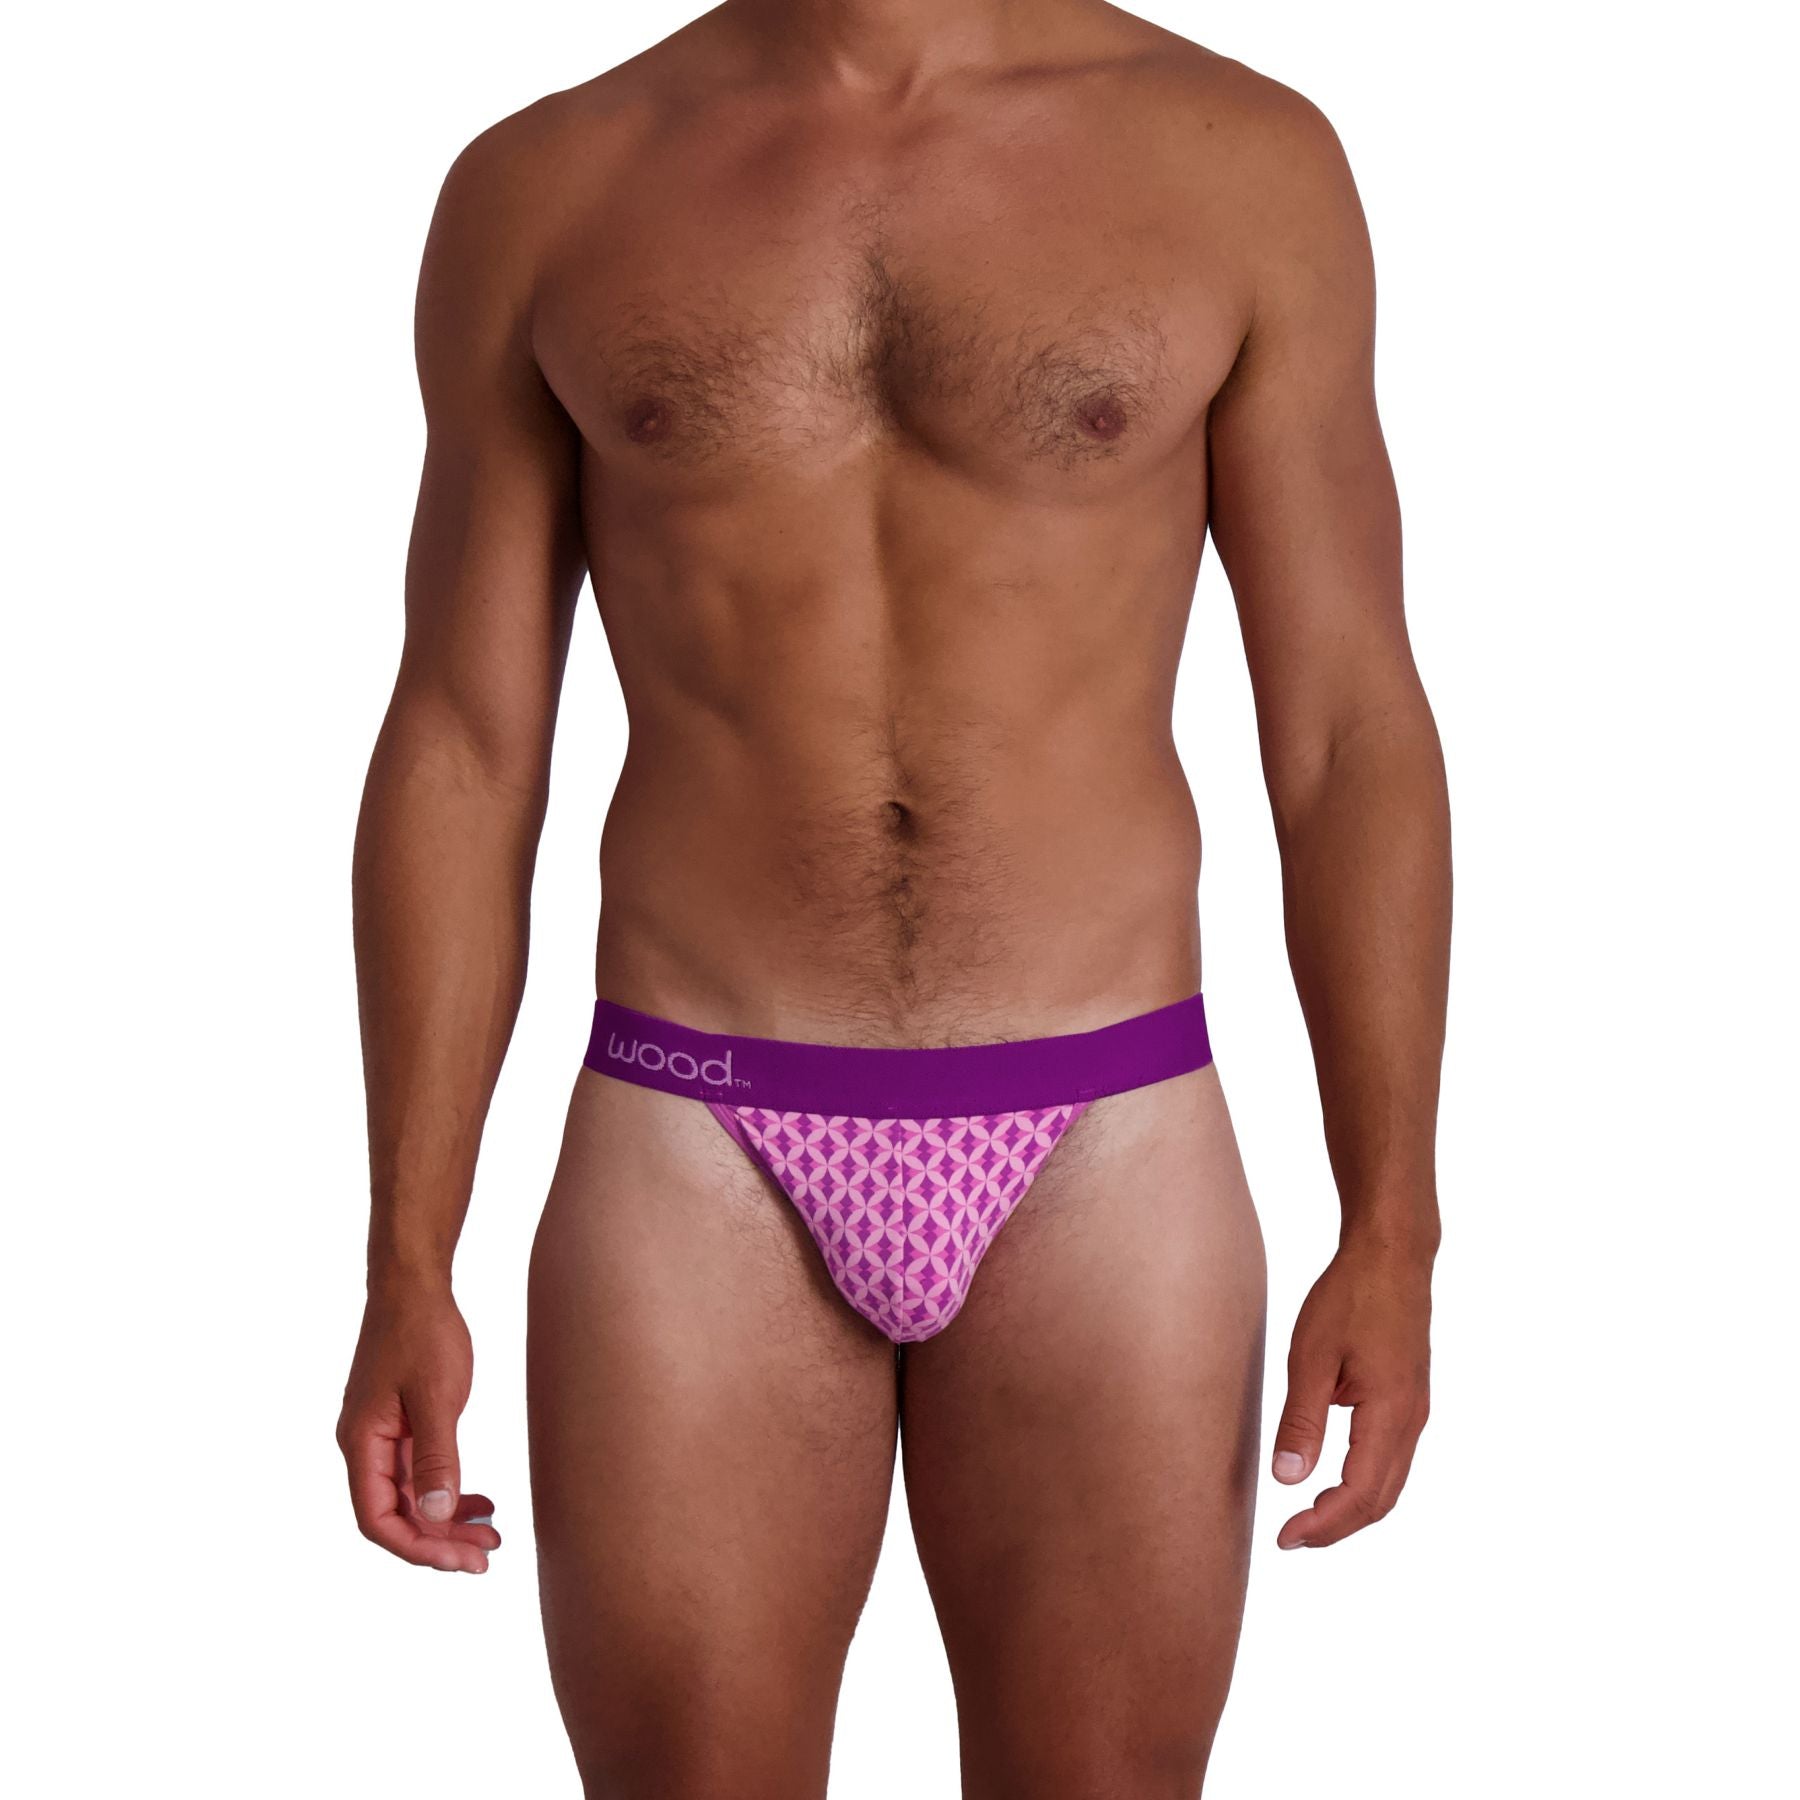 Jock Strap in Purple Interlock by Wood Underwear